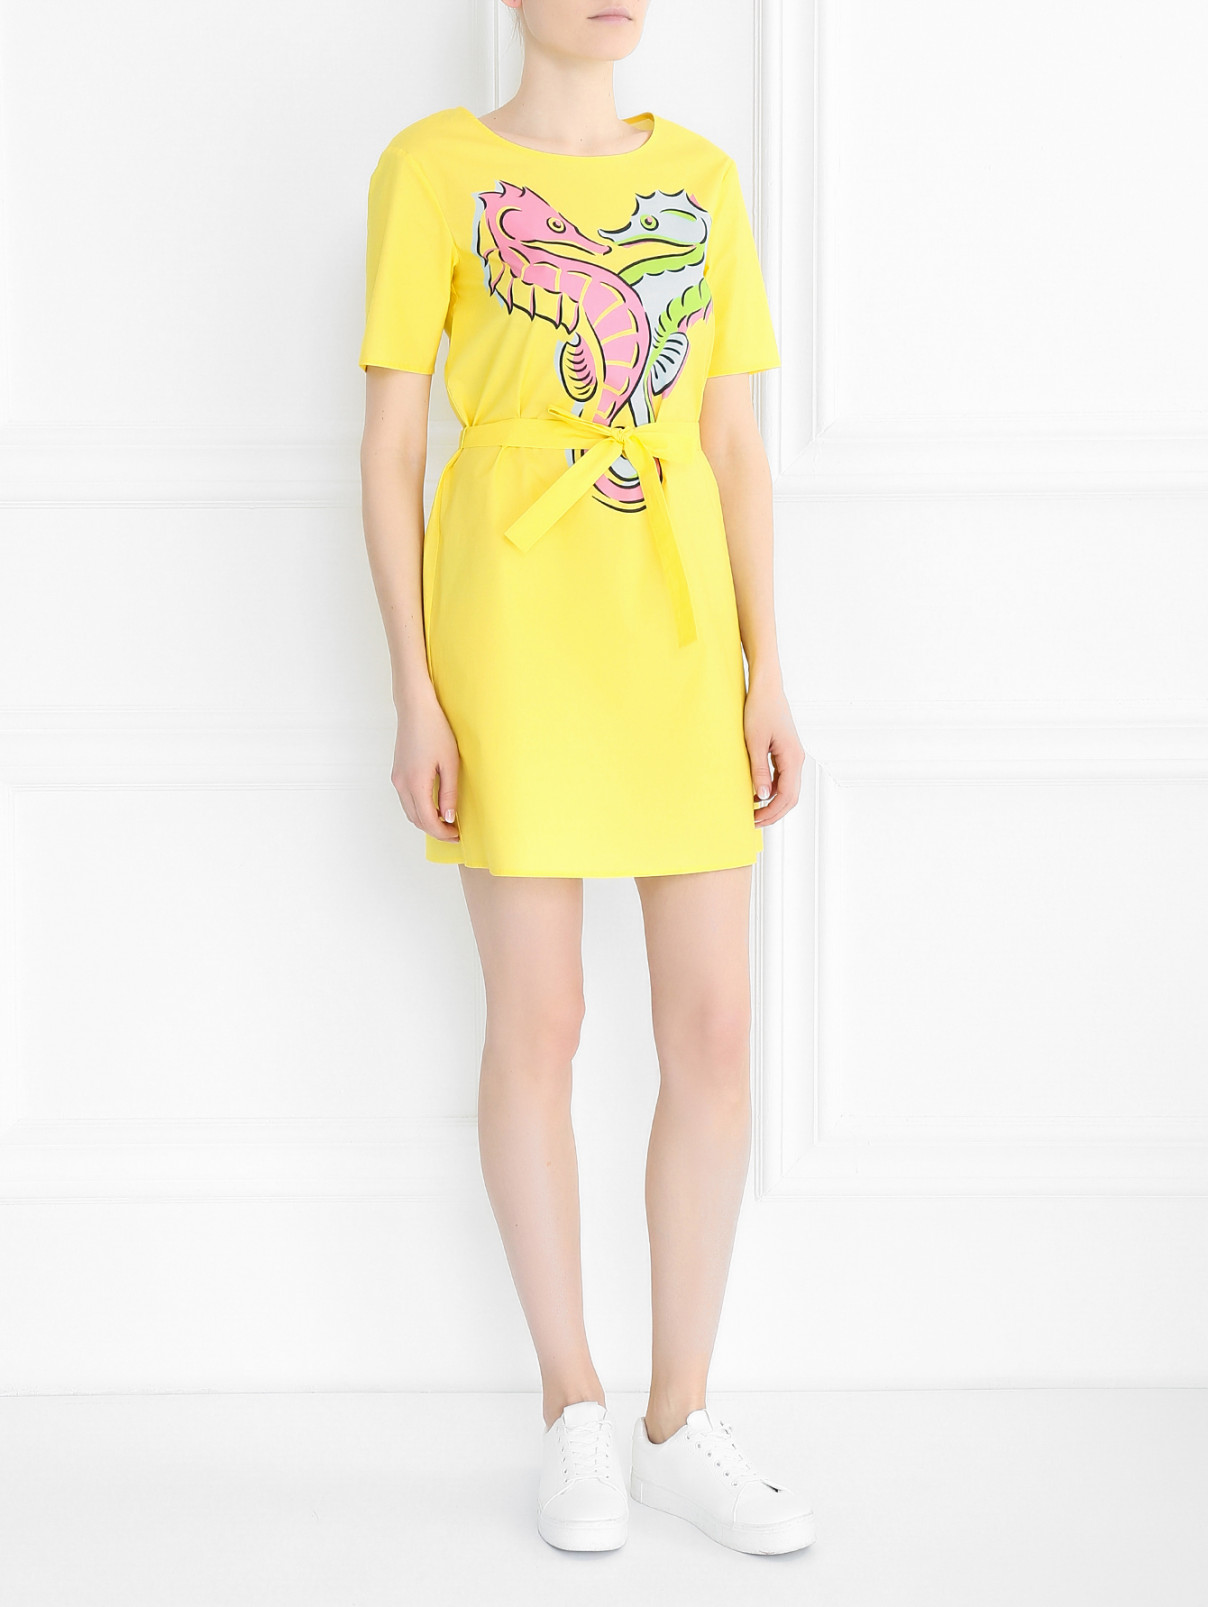 Платье из хлопка с принтом Moschino Boutique  –  Модель Общий вид  – Цвет:  Розовый